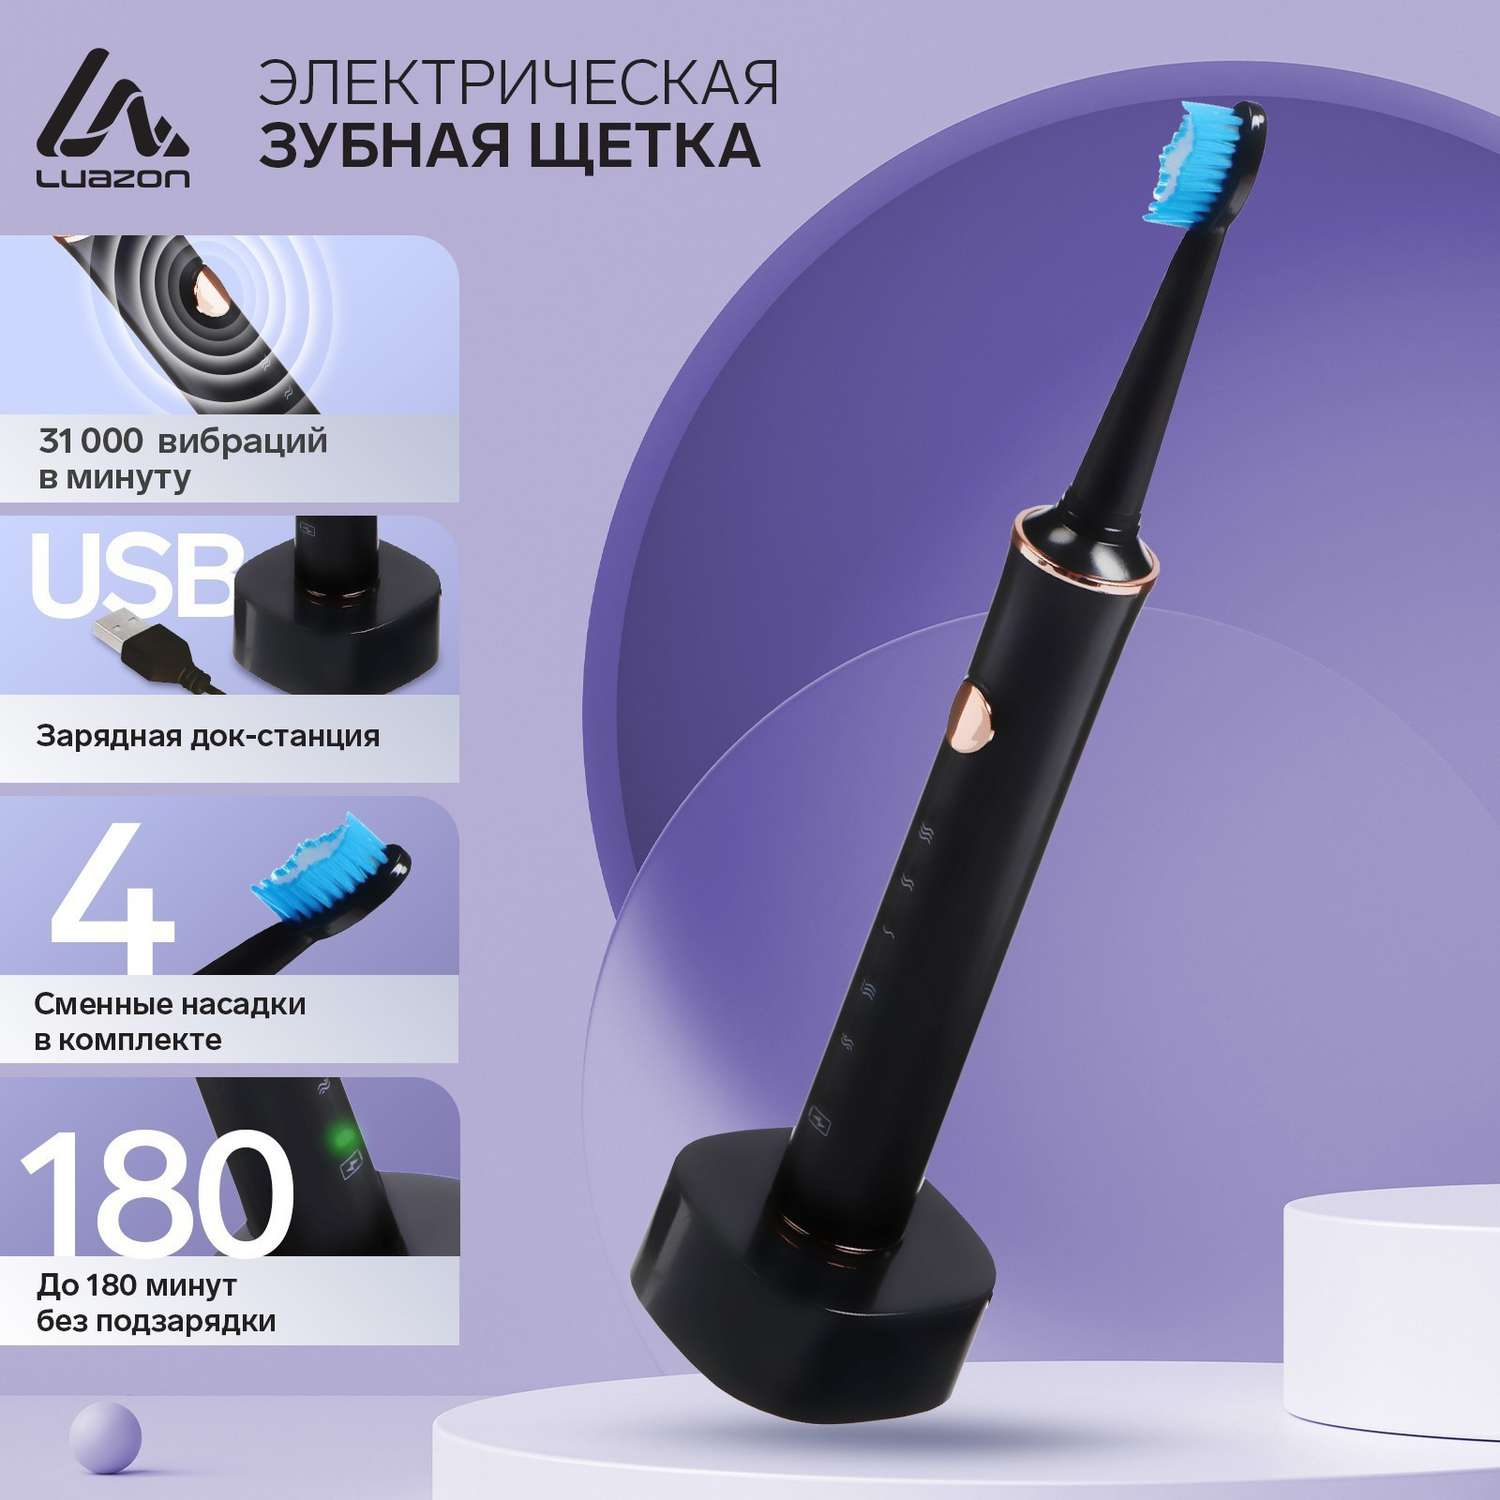 Электрическая зубная щётка Luazon Home LP002 вибрационная 4 насадки АКБ - фото 2